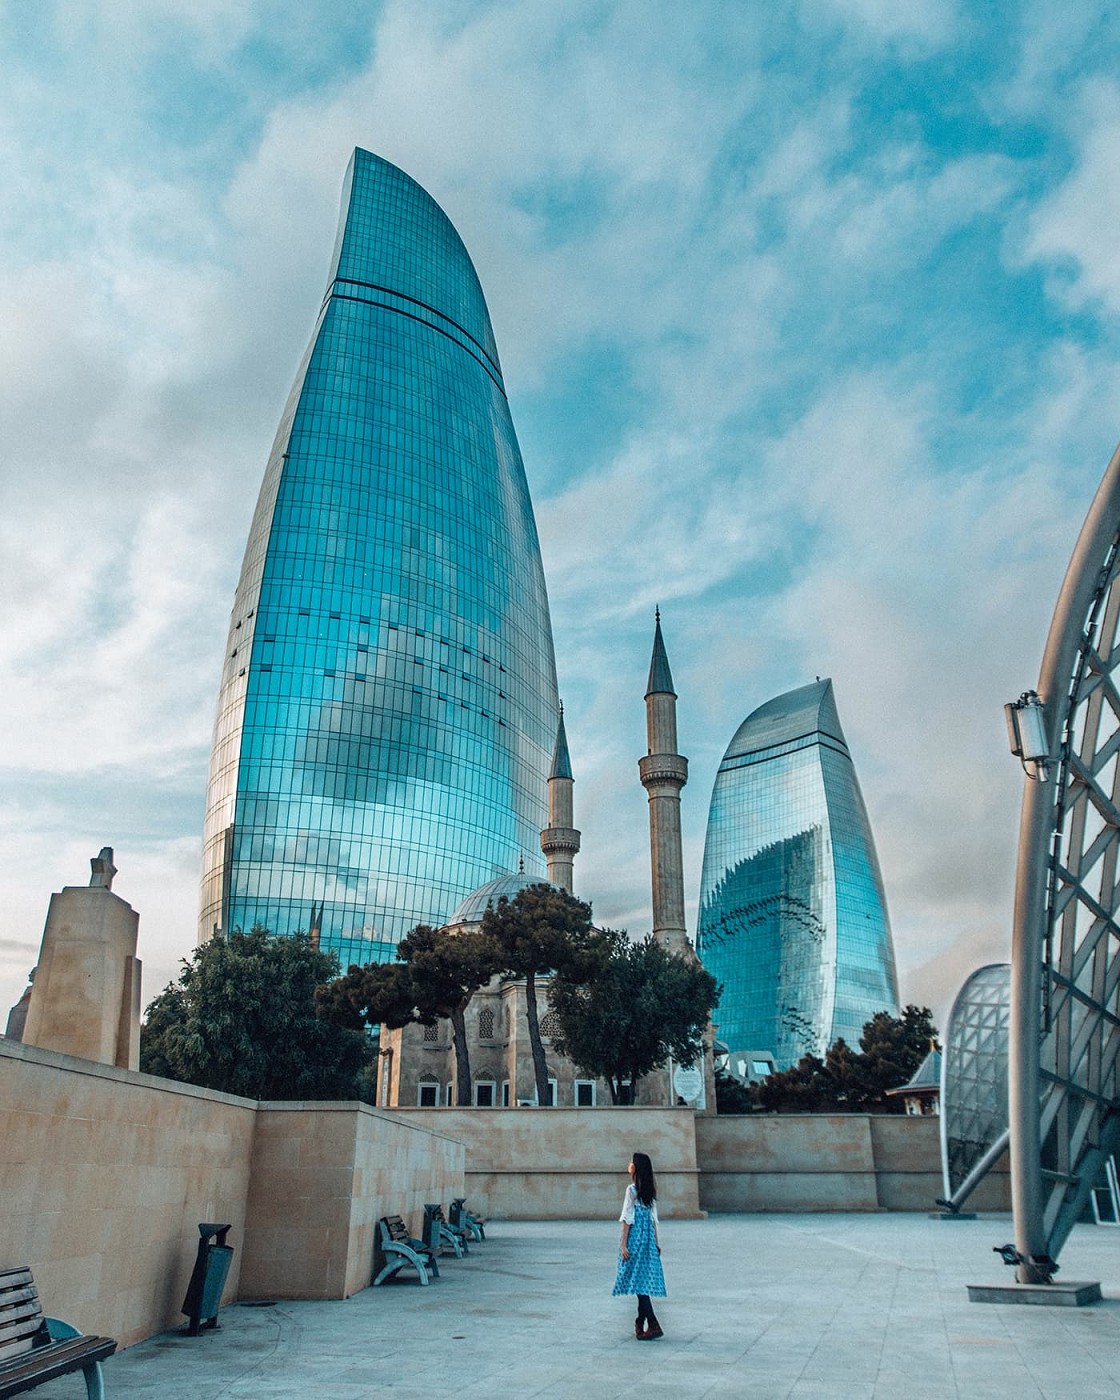 6 Baku, Azerbaijan - The Diary of a Nomad - solo travel